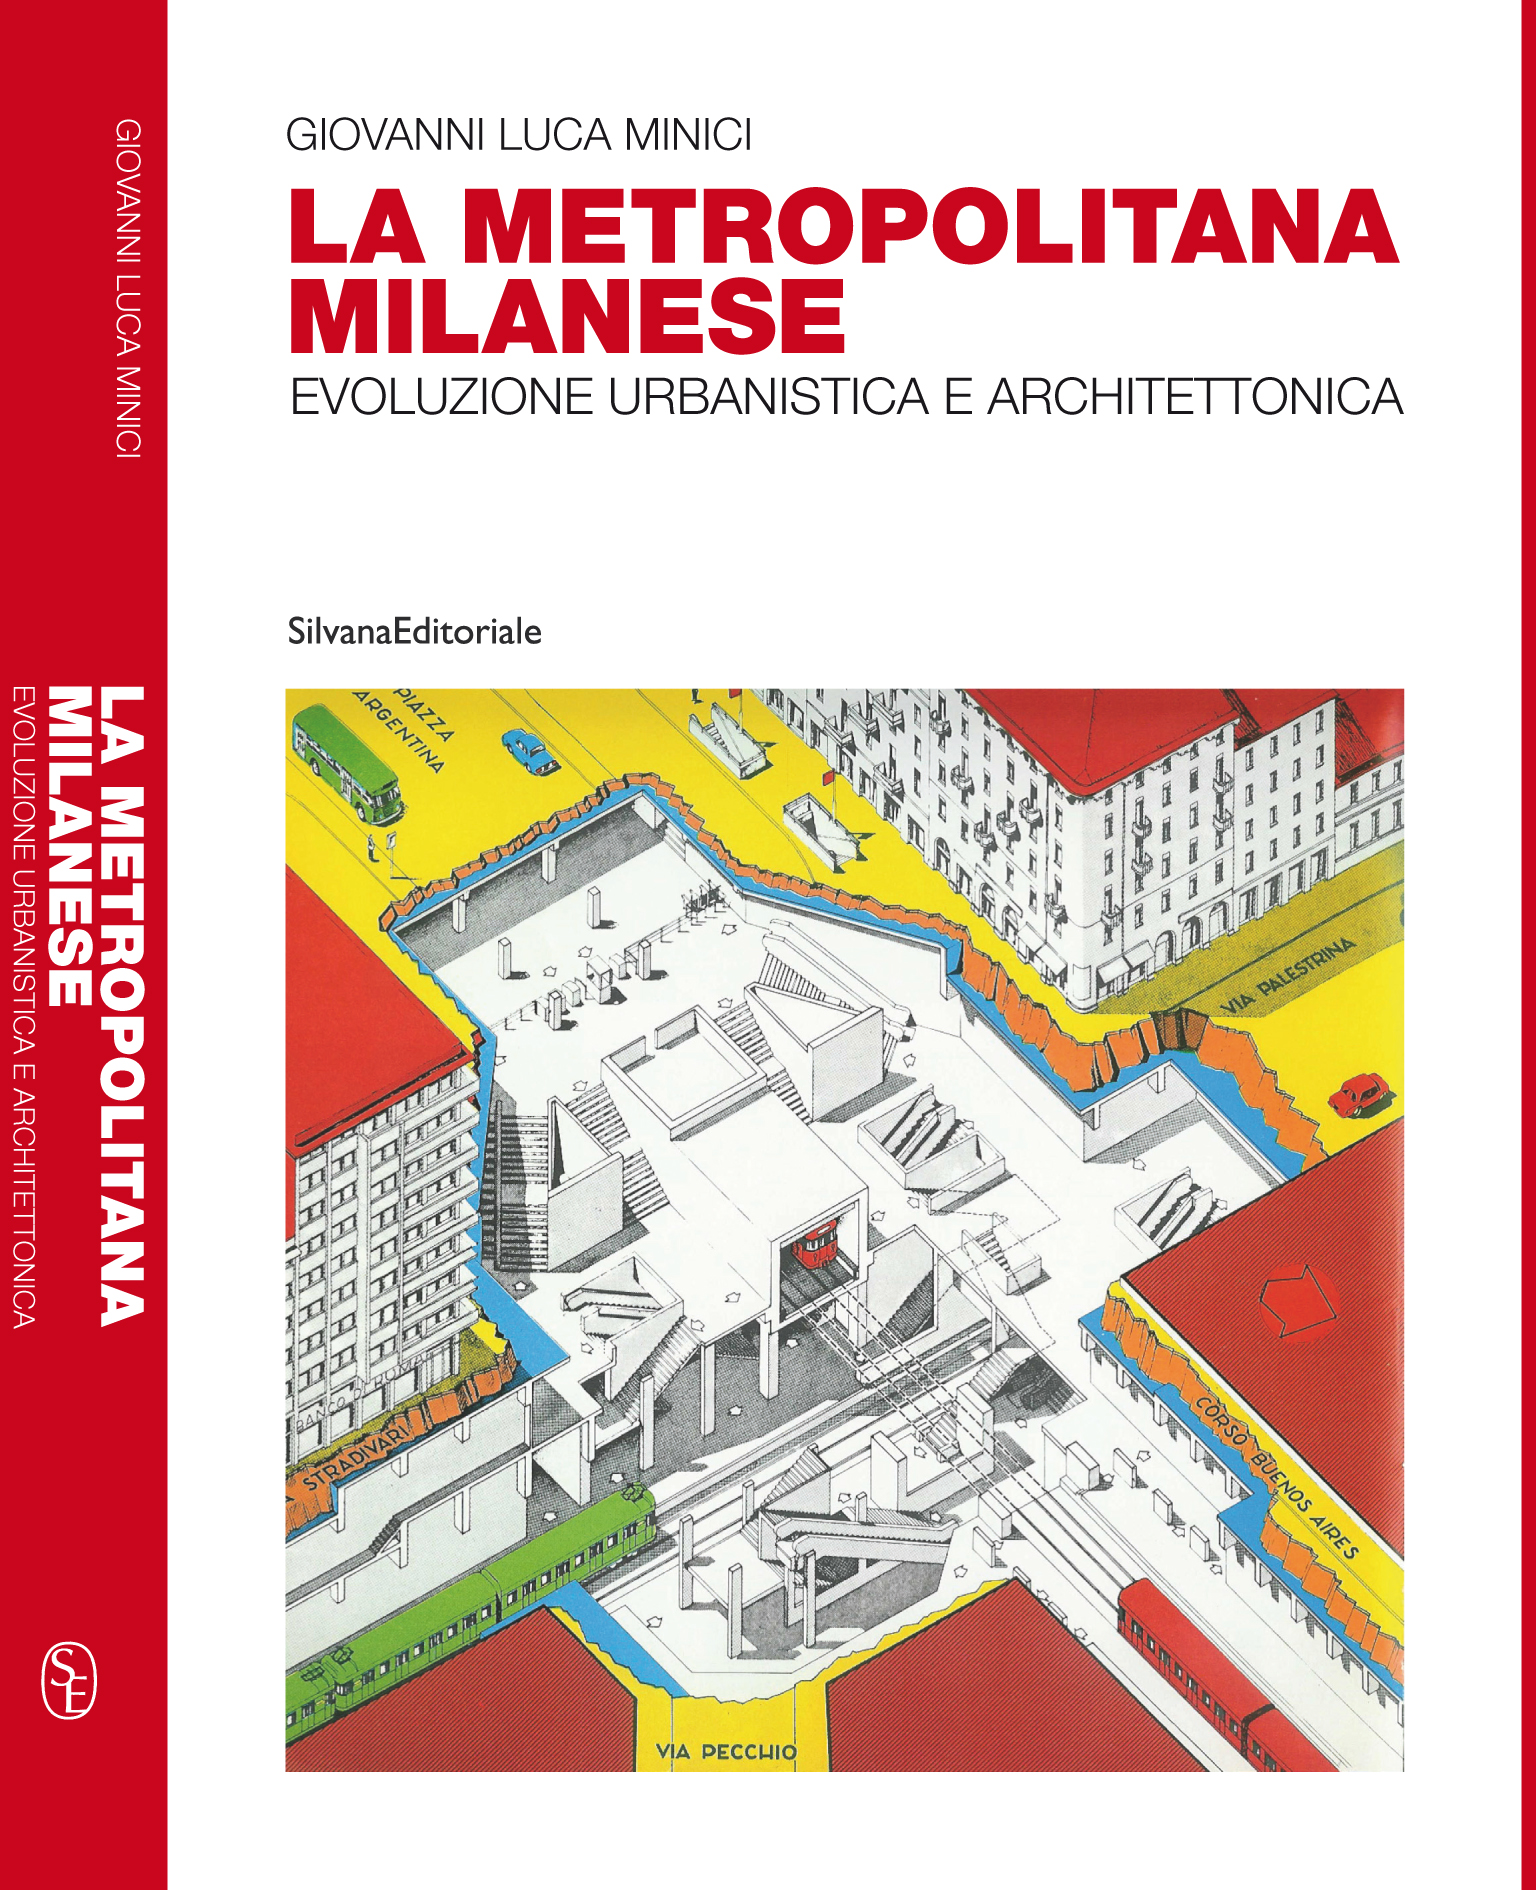 “La metropolitana milanese: evoluzione urbanistica e architettonica”